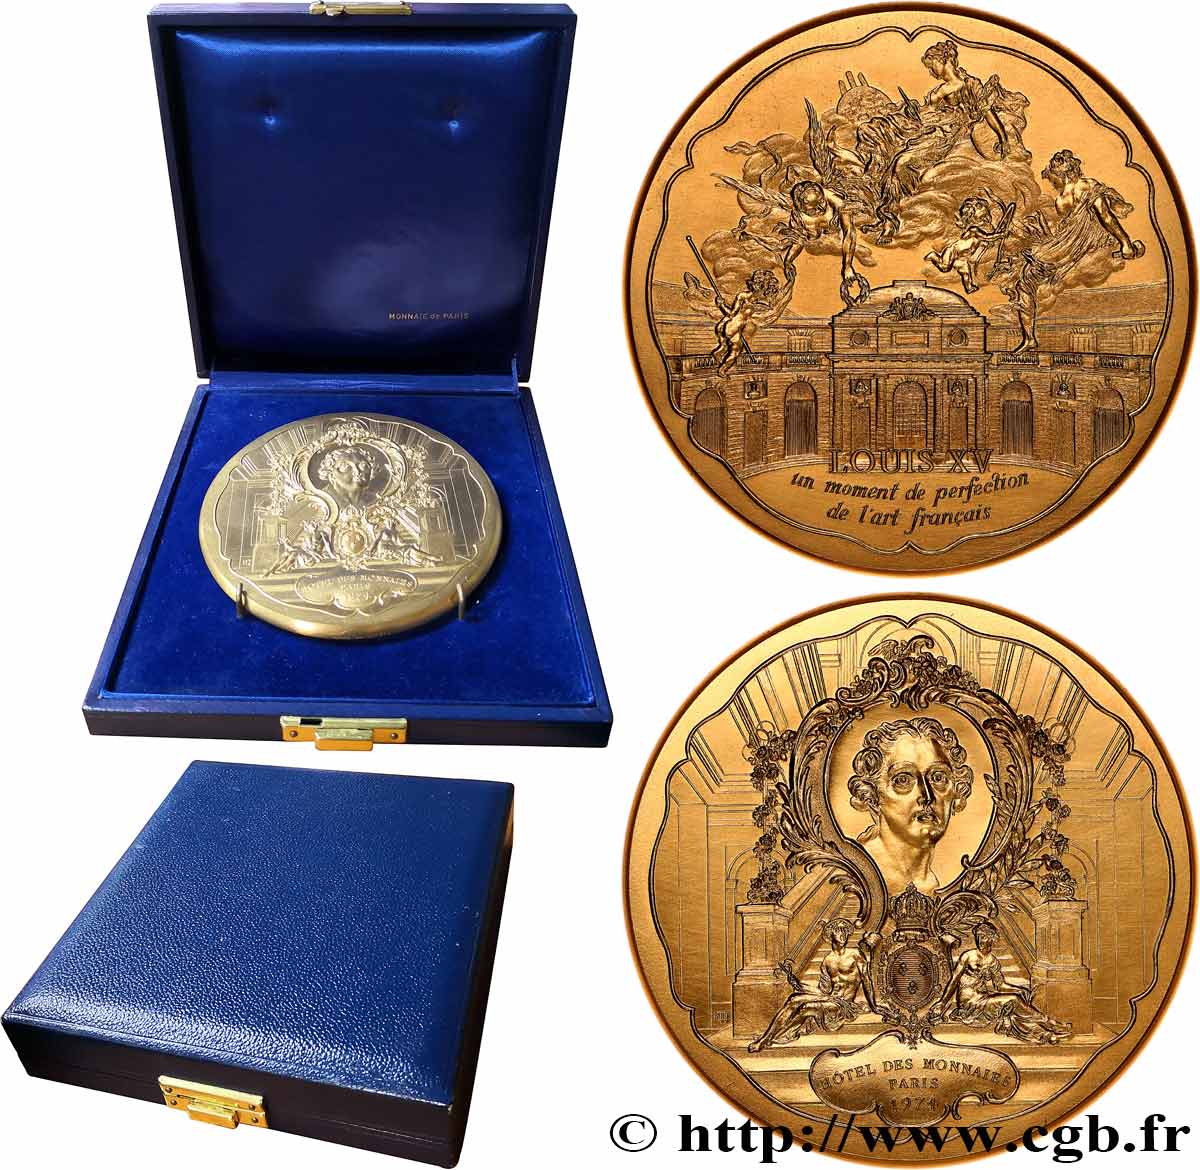 CINQUIÈME RÉPUBLIQUE Médaille, Louis XV, un moment de perfection de l’art français, Exemplaire Editeur SPL